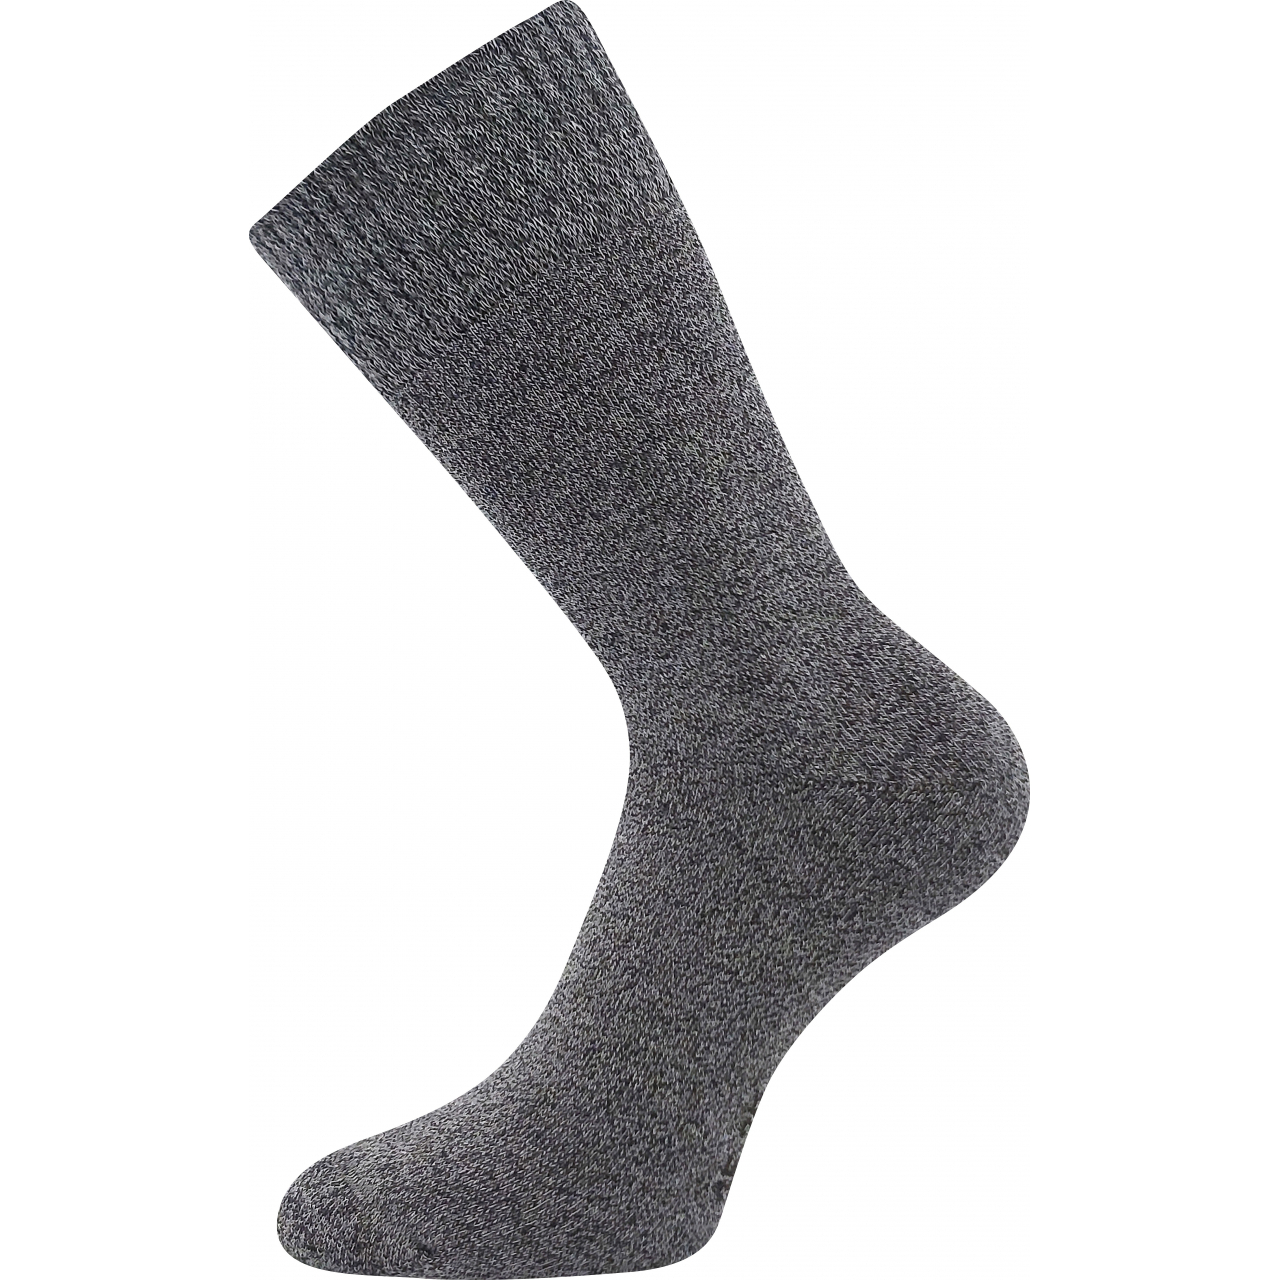 Ponožky klasické unisex Voxx Wolis - tmavě šedé, 39-42